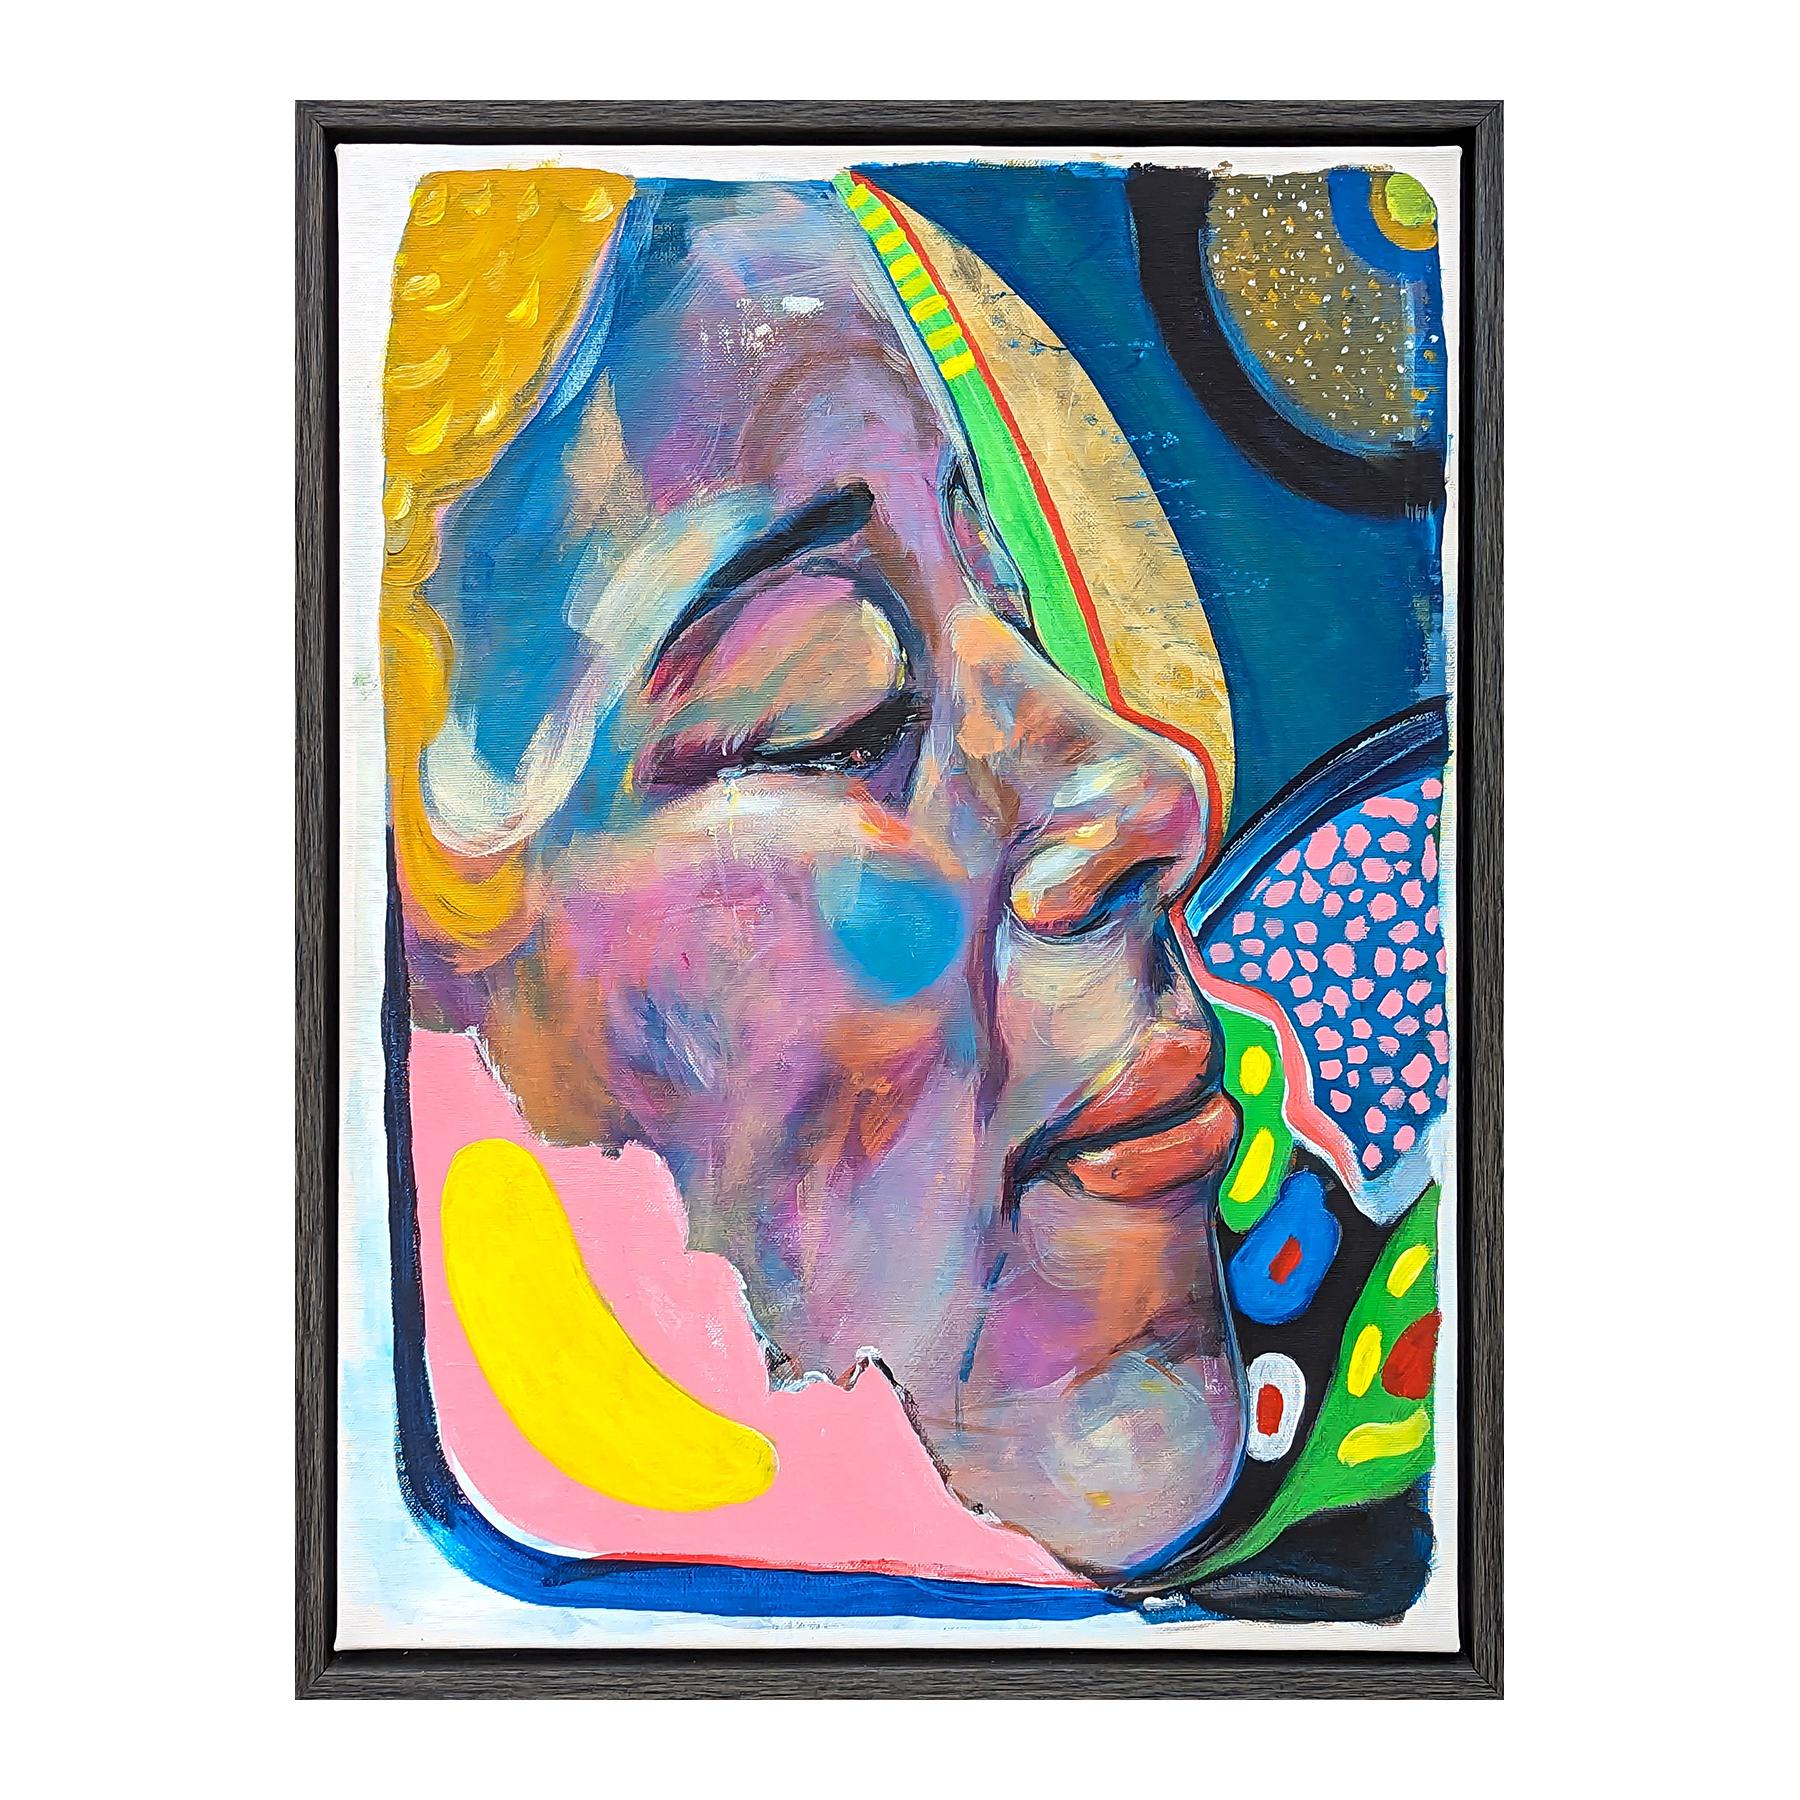 Peinture figurative contemporaine colorée de l'artiste Moisés Villafuerte, basé à Houston. L'œuvre présente une vue rapprochée d'un visage sur un fond abstrait bleu, rose, vert et jaune. Actuellement accroché dans un cadre de couleur grise. 